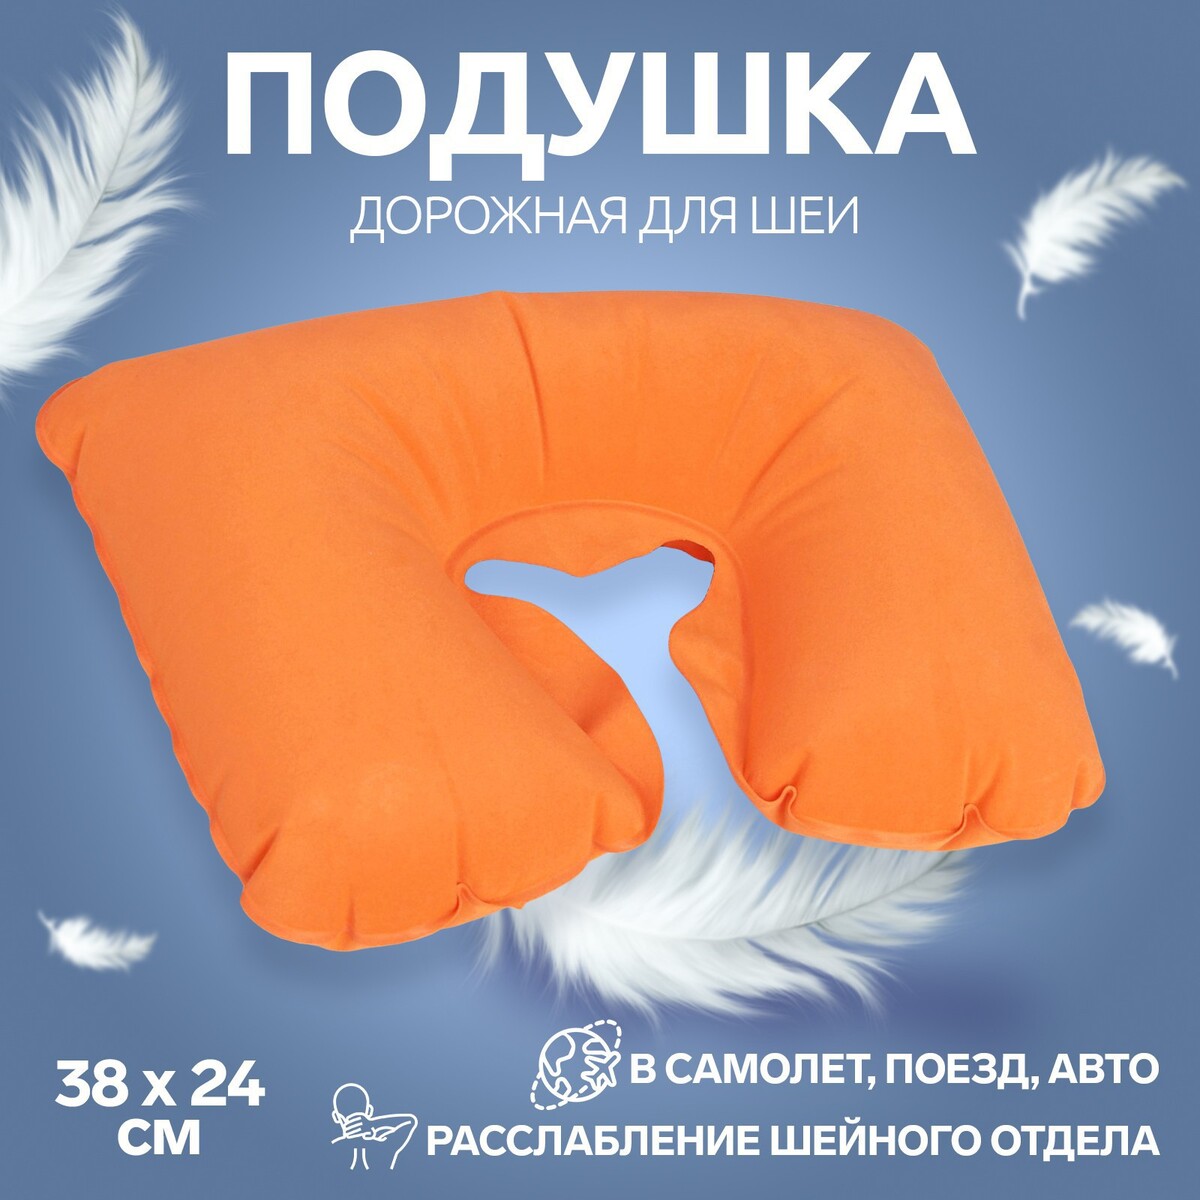 Подушка для шеи дорожная, надувная, 38 × 24 см, цвет оранжевый подушка надувная 37 × 28 × 15 см синий серый